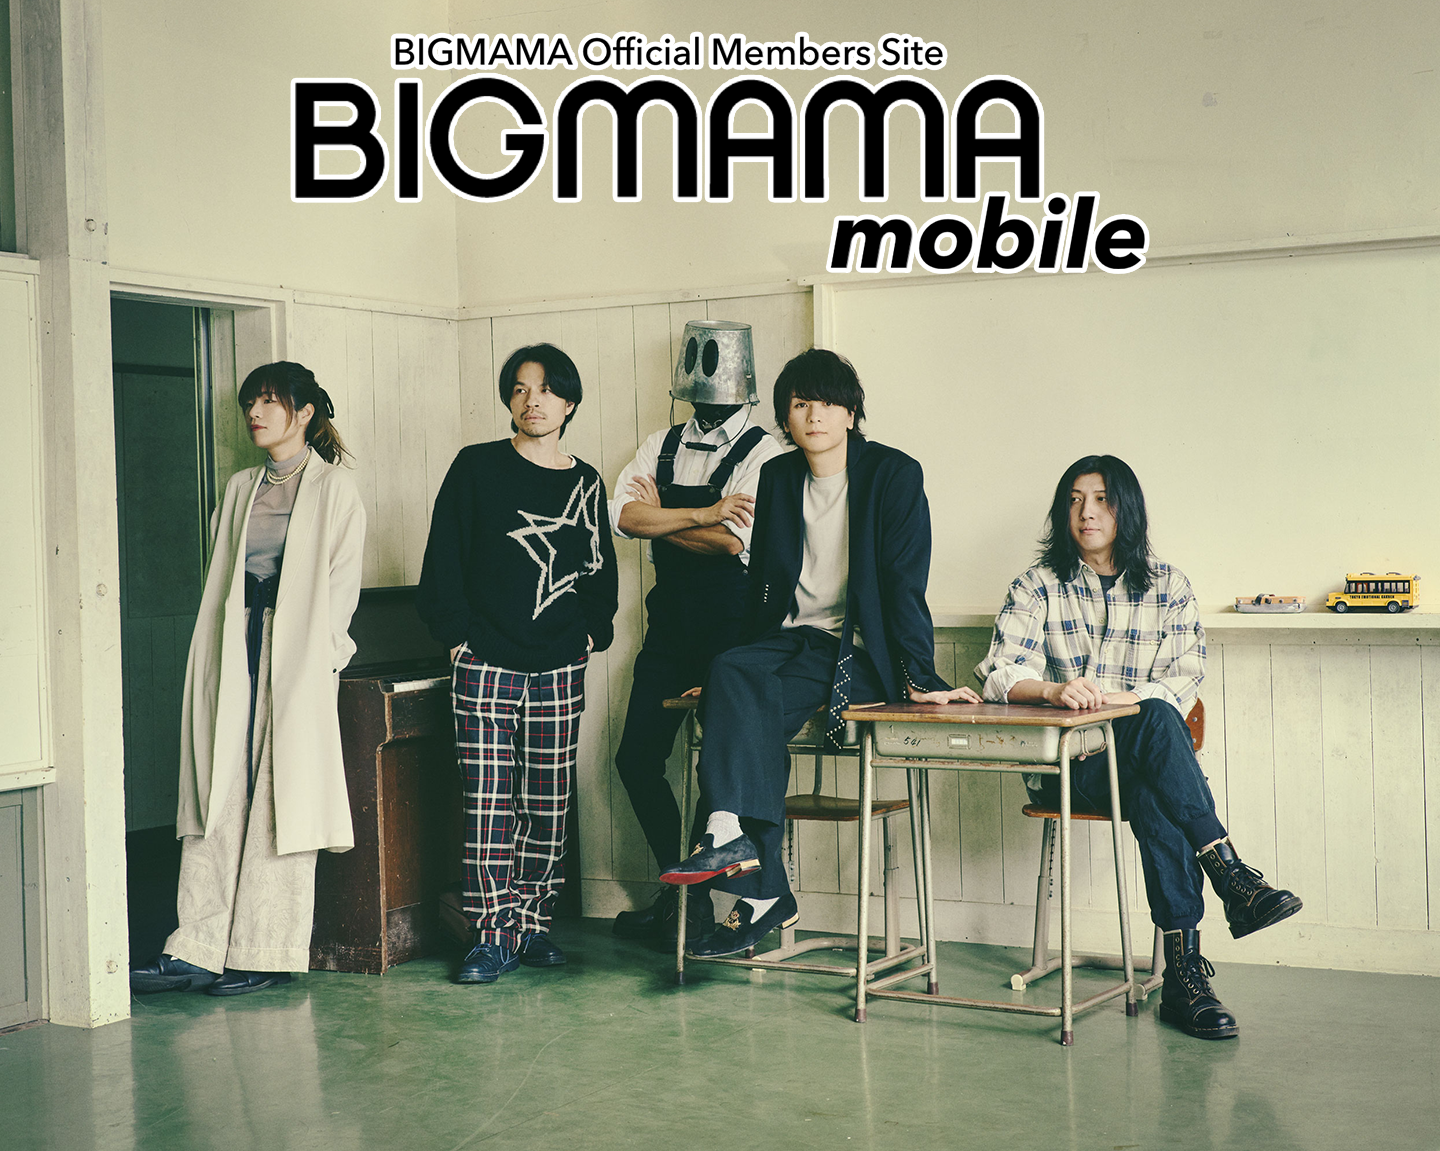 BIGMAMA mobile